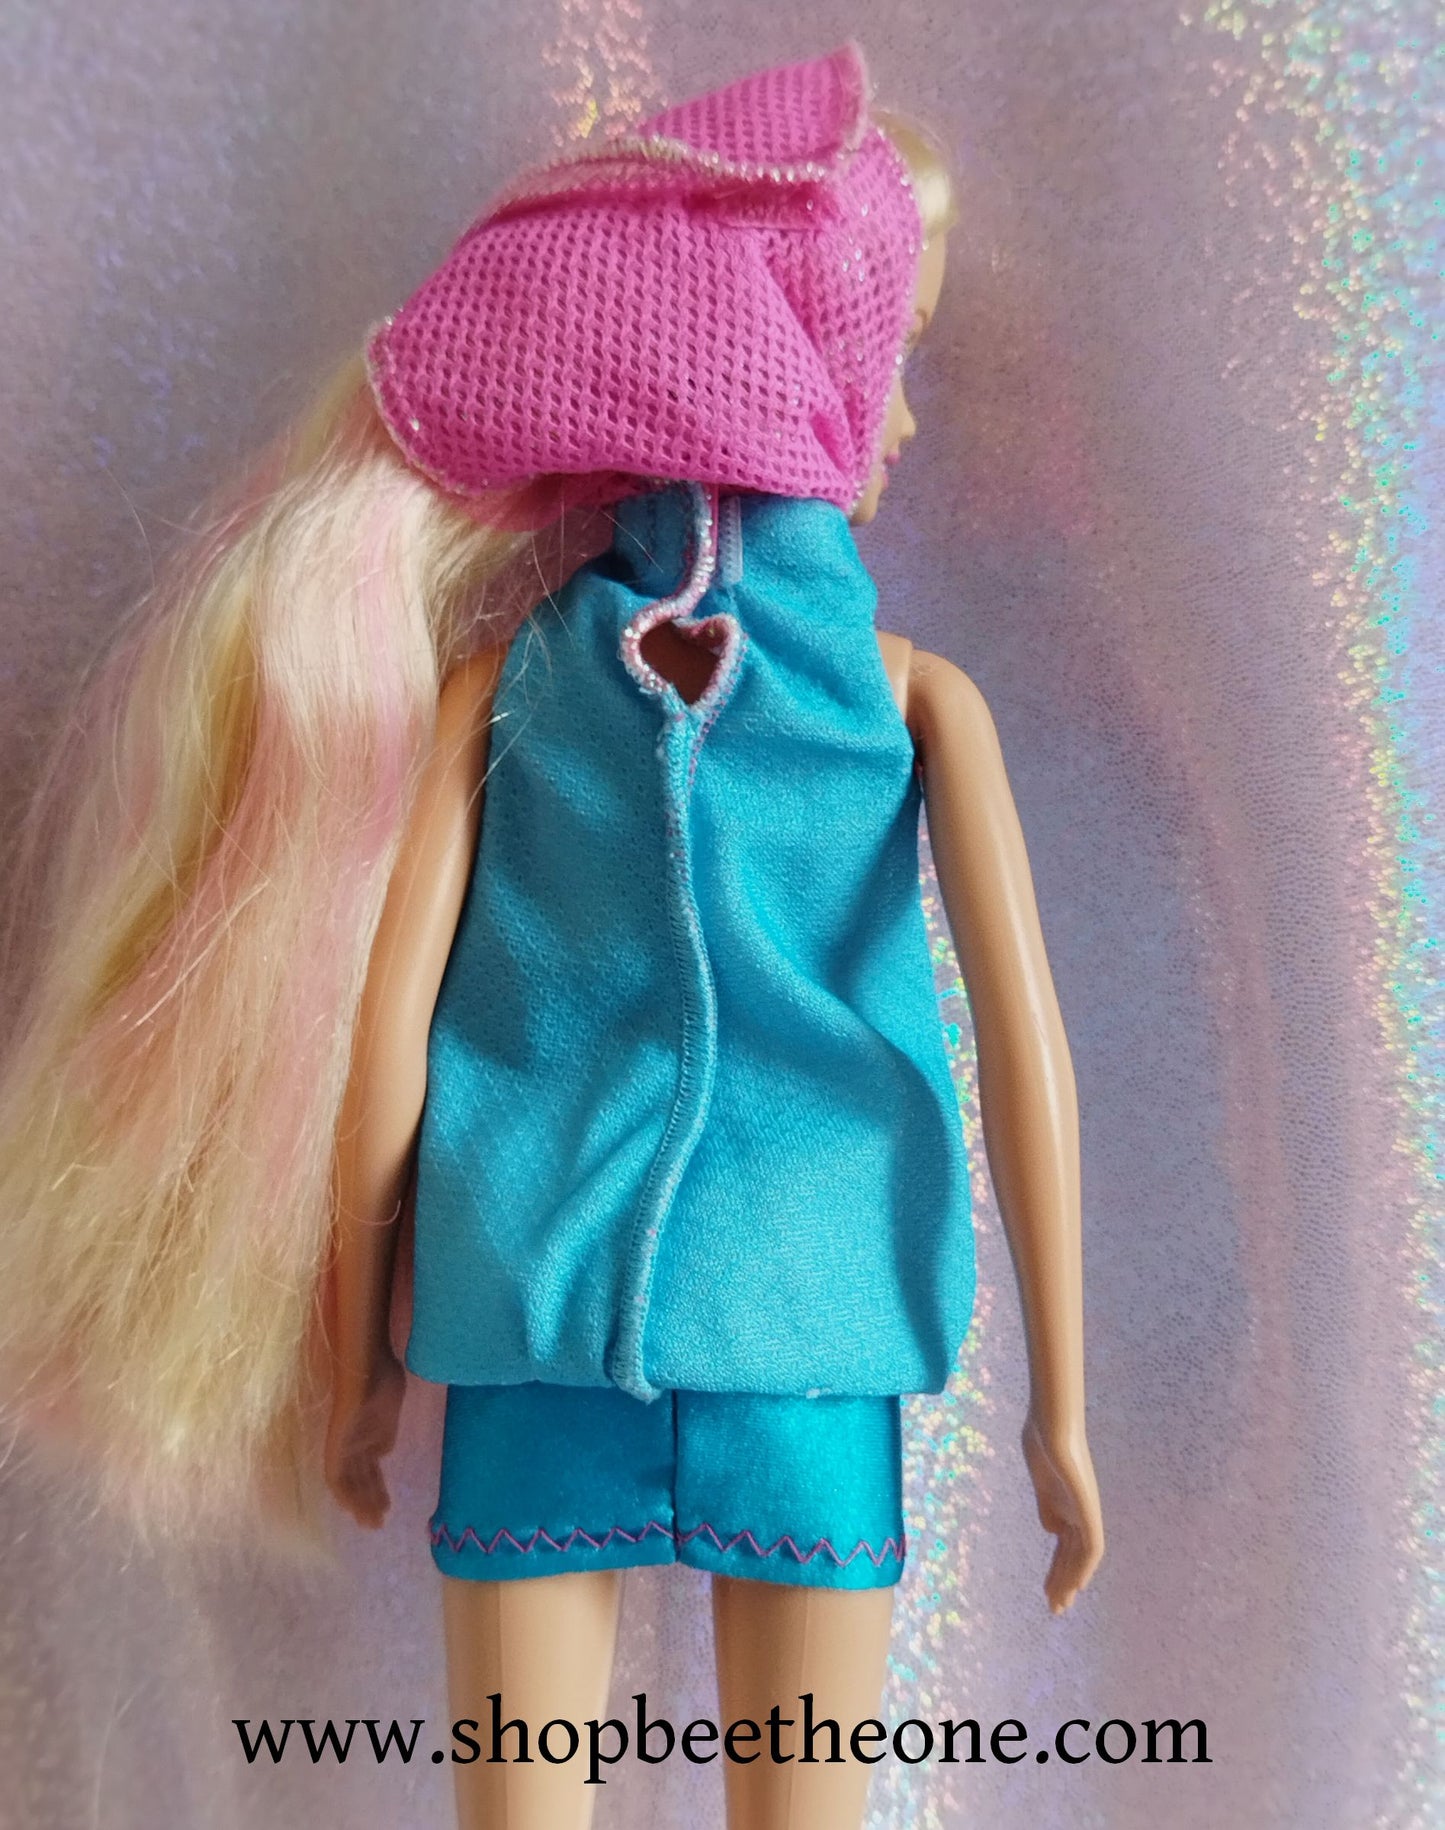 Barbie et le Secret des Sirènes (A Mermaid tale) - Merliah Bath Play Fun 2-en-1 - Mattel 2010 - Poupée - Vêtements